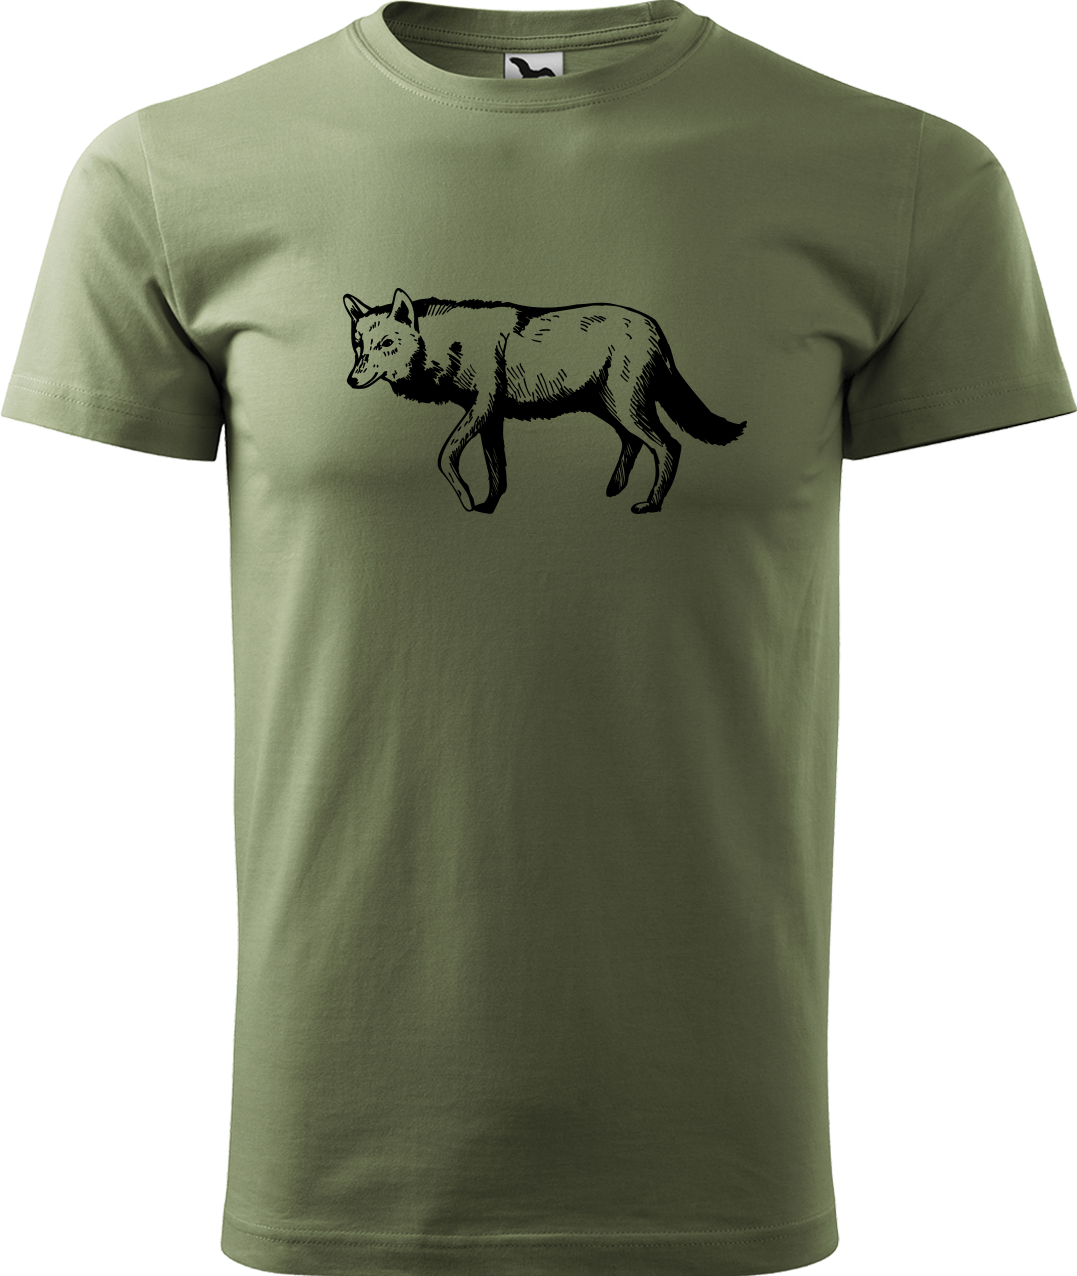 Pánské tričko s vlkem - Vlk Velikost: 4XL, Barva: Světlá khaki (28), Střih: pánský